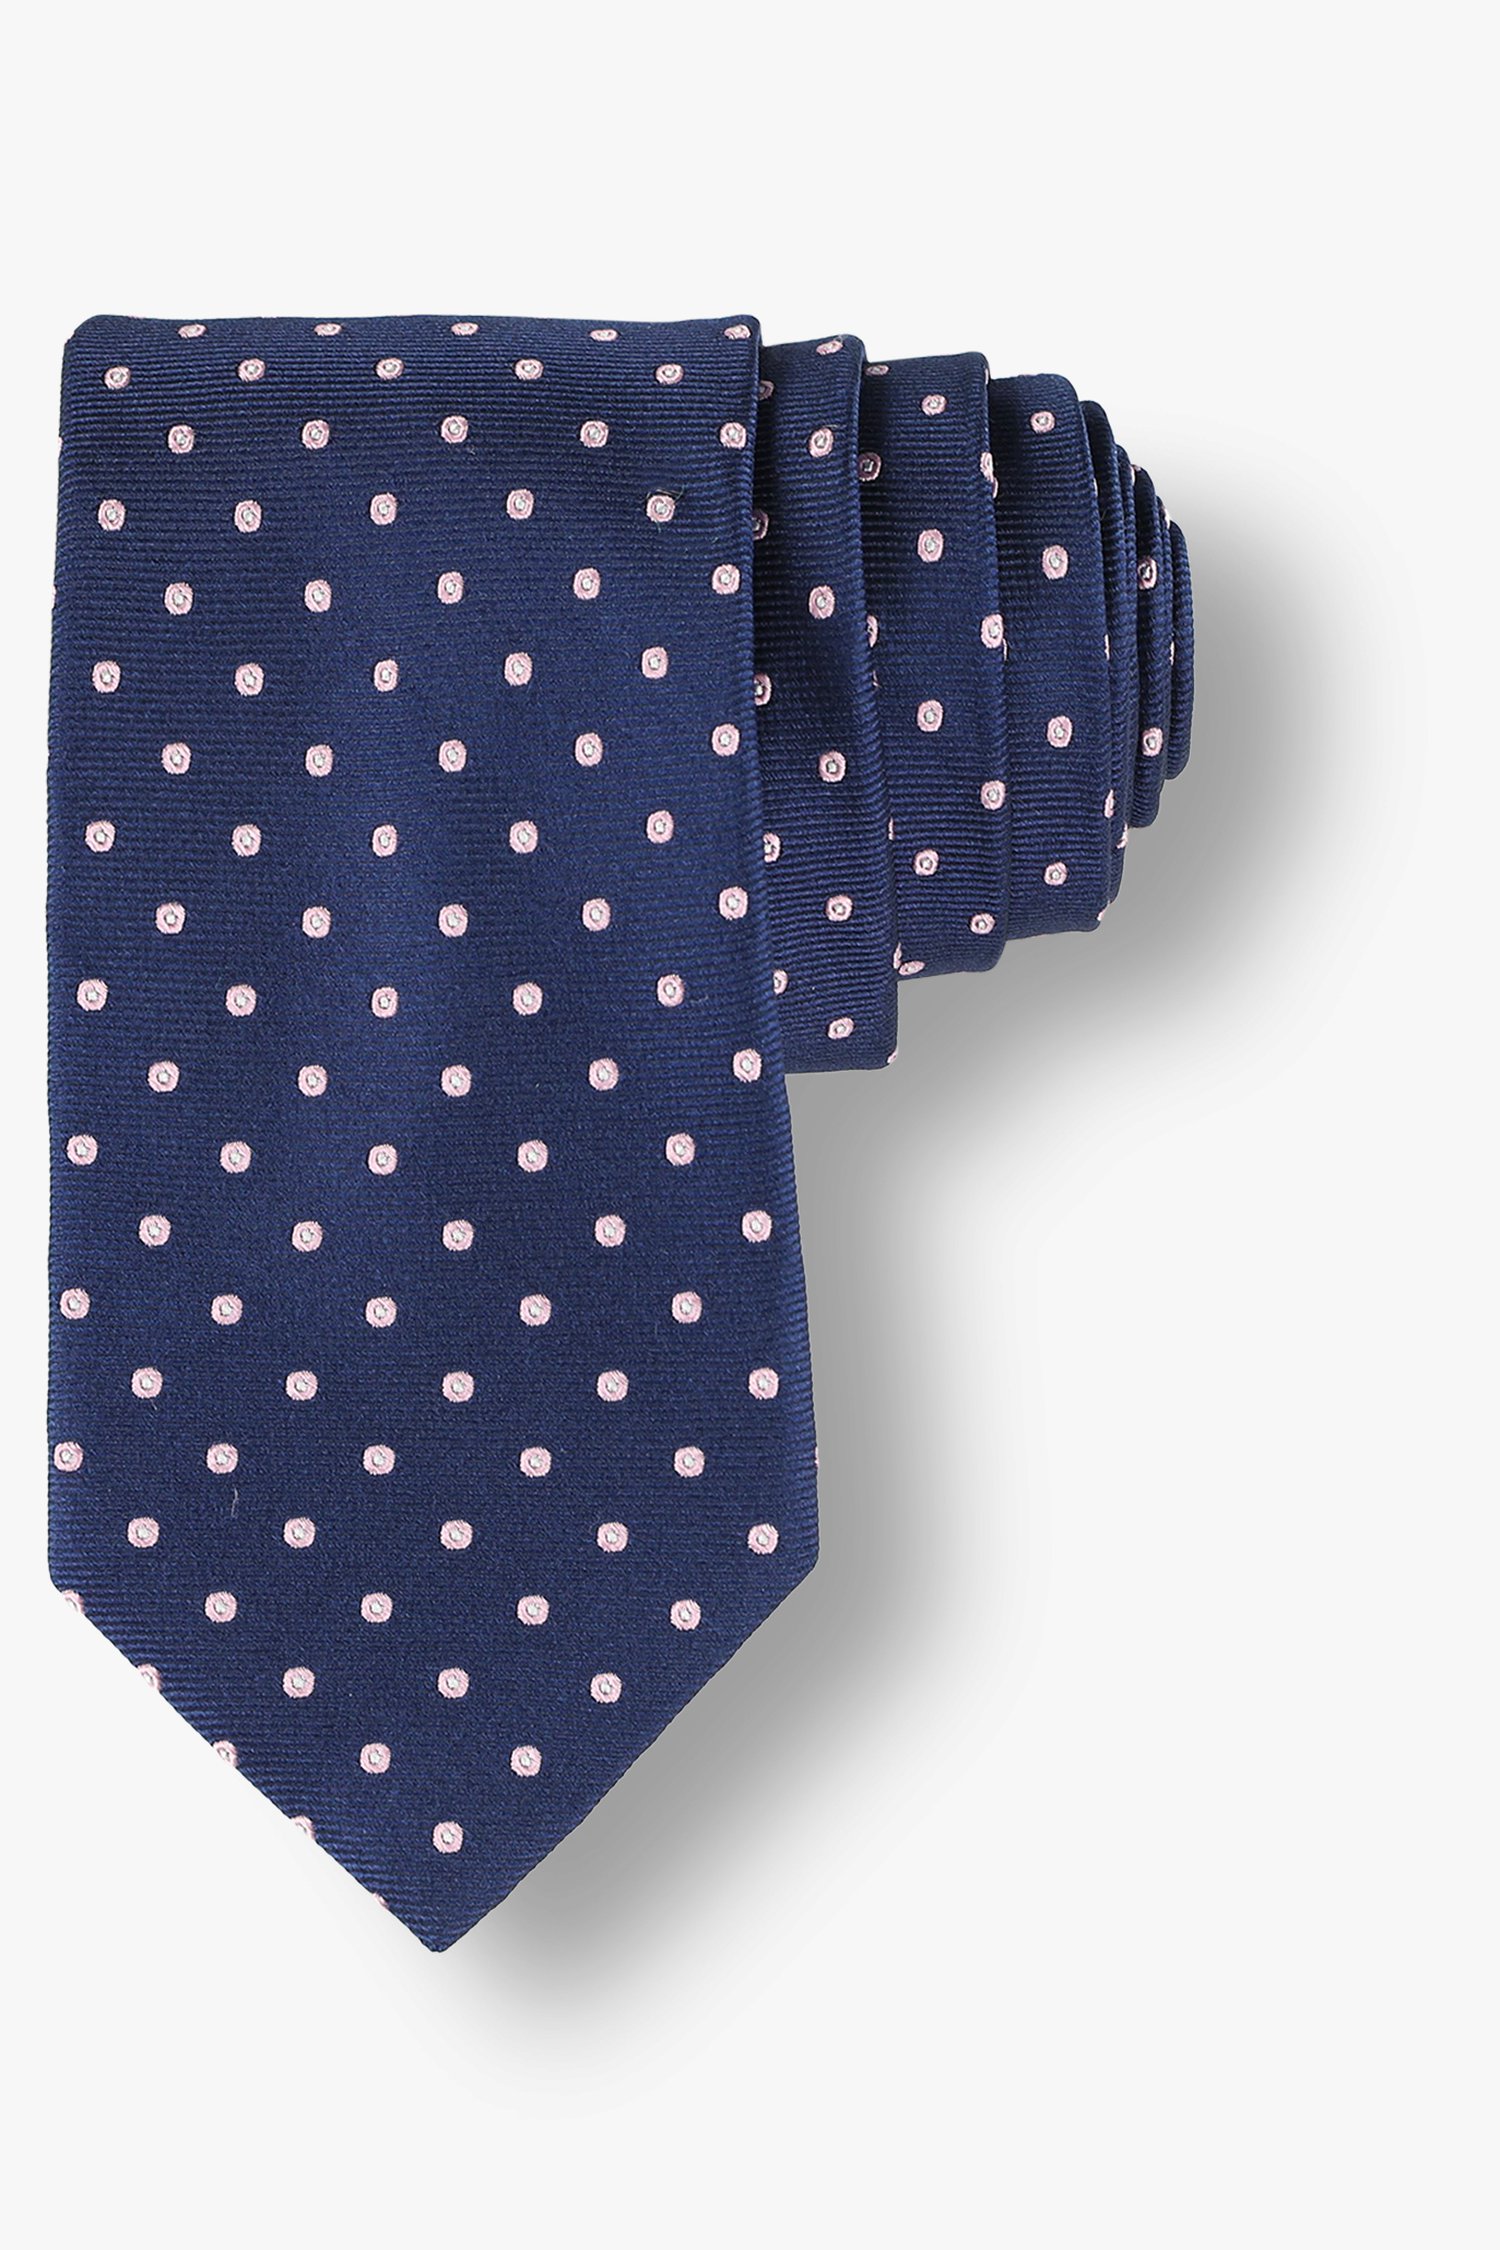 Cravate bleu marine avec imprimé à pois roses de Michaelis pour Hommes